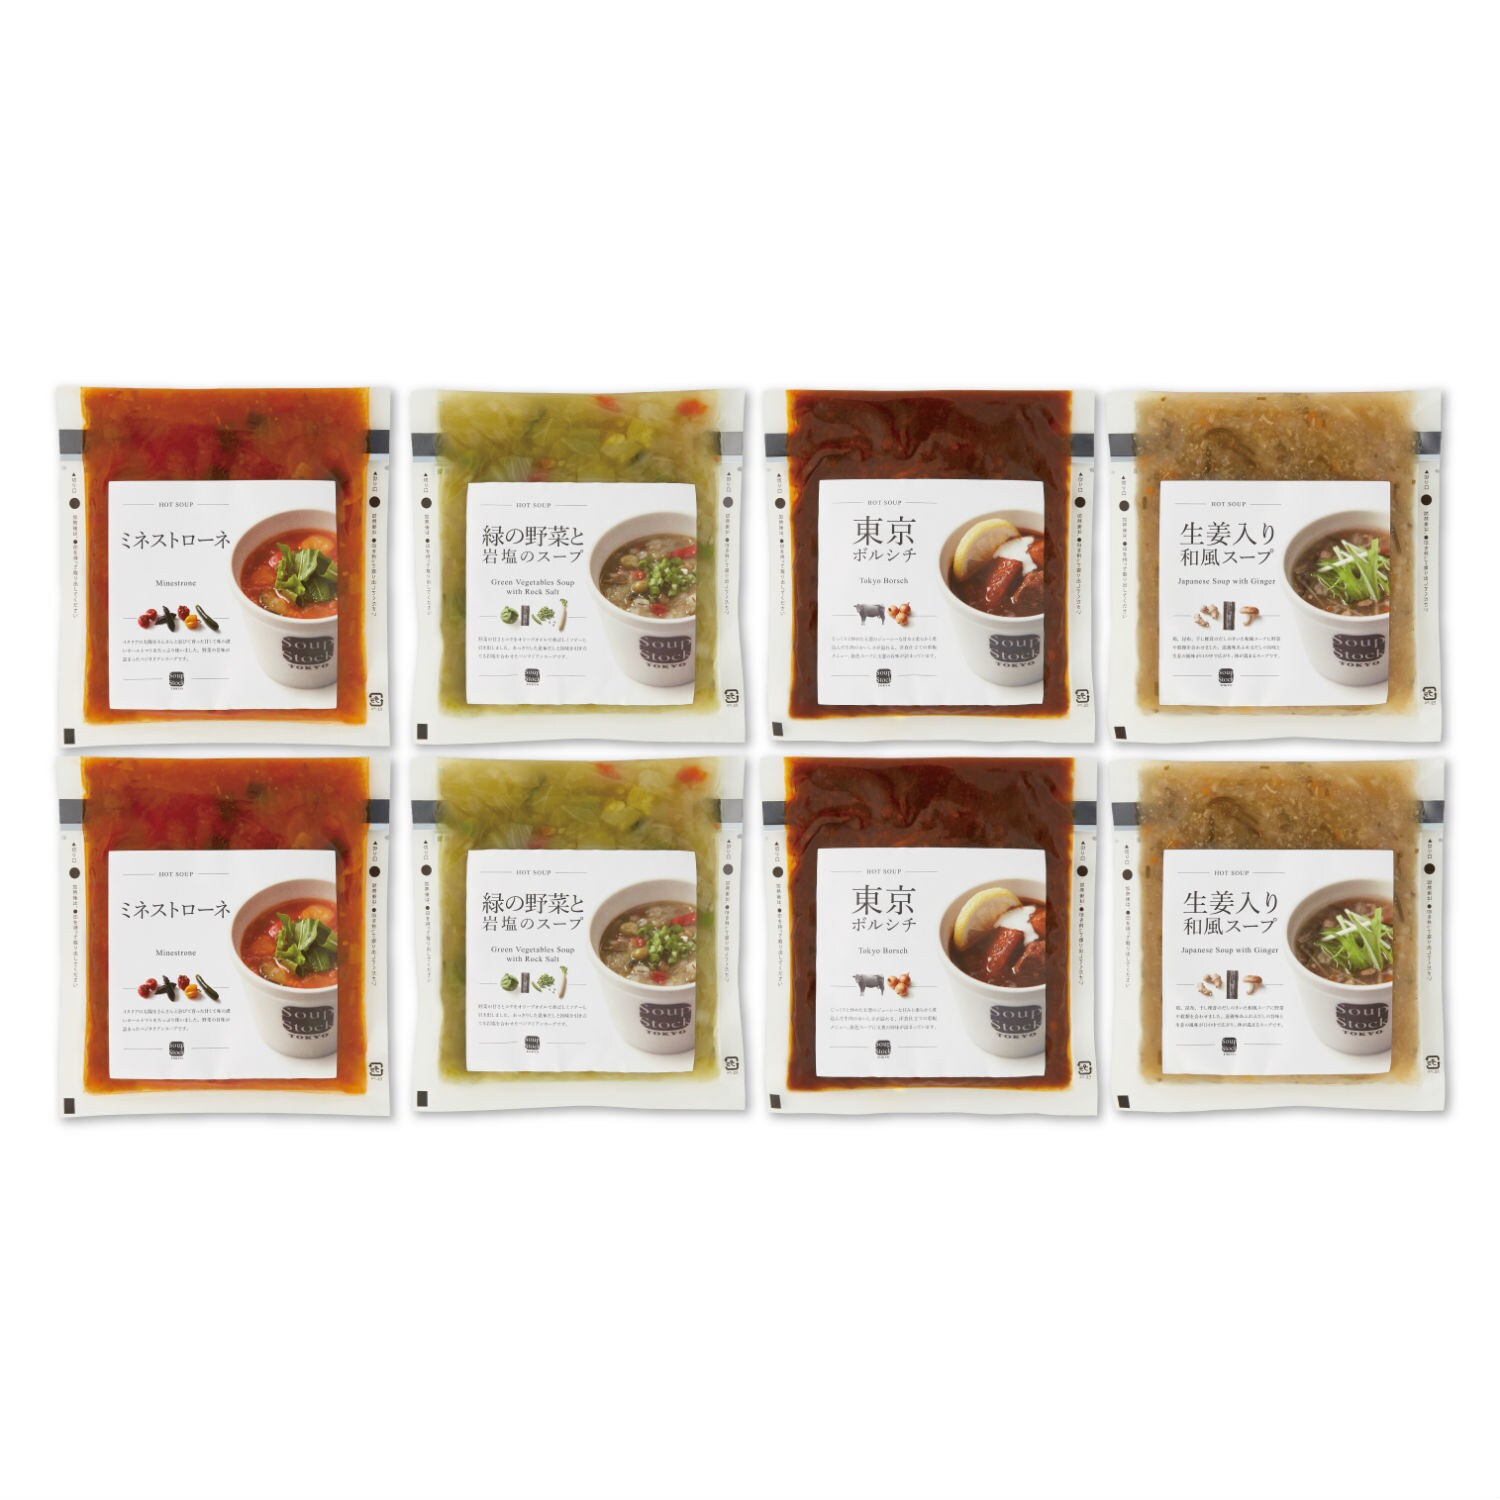 【Soup Stock Tokyo】スープストックトーキョー ４種の野菜スープ詰合せ - おめでとう,-